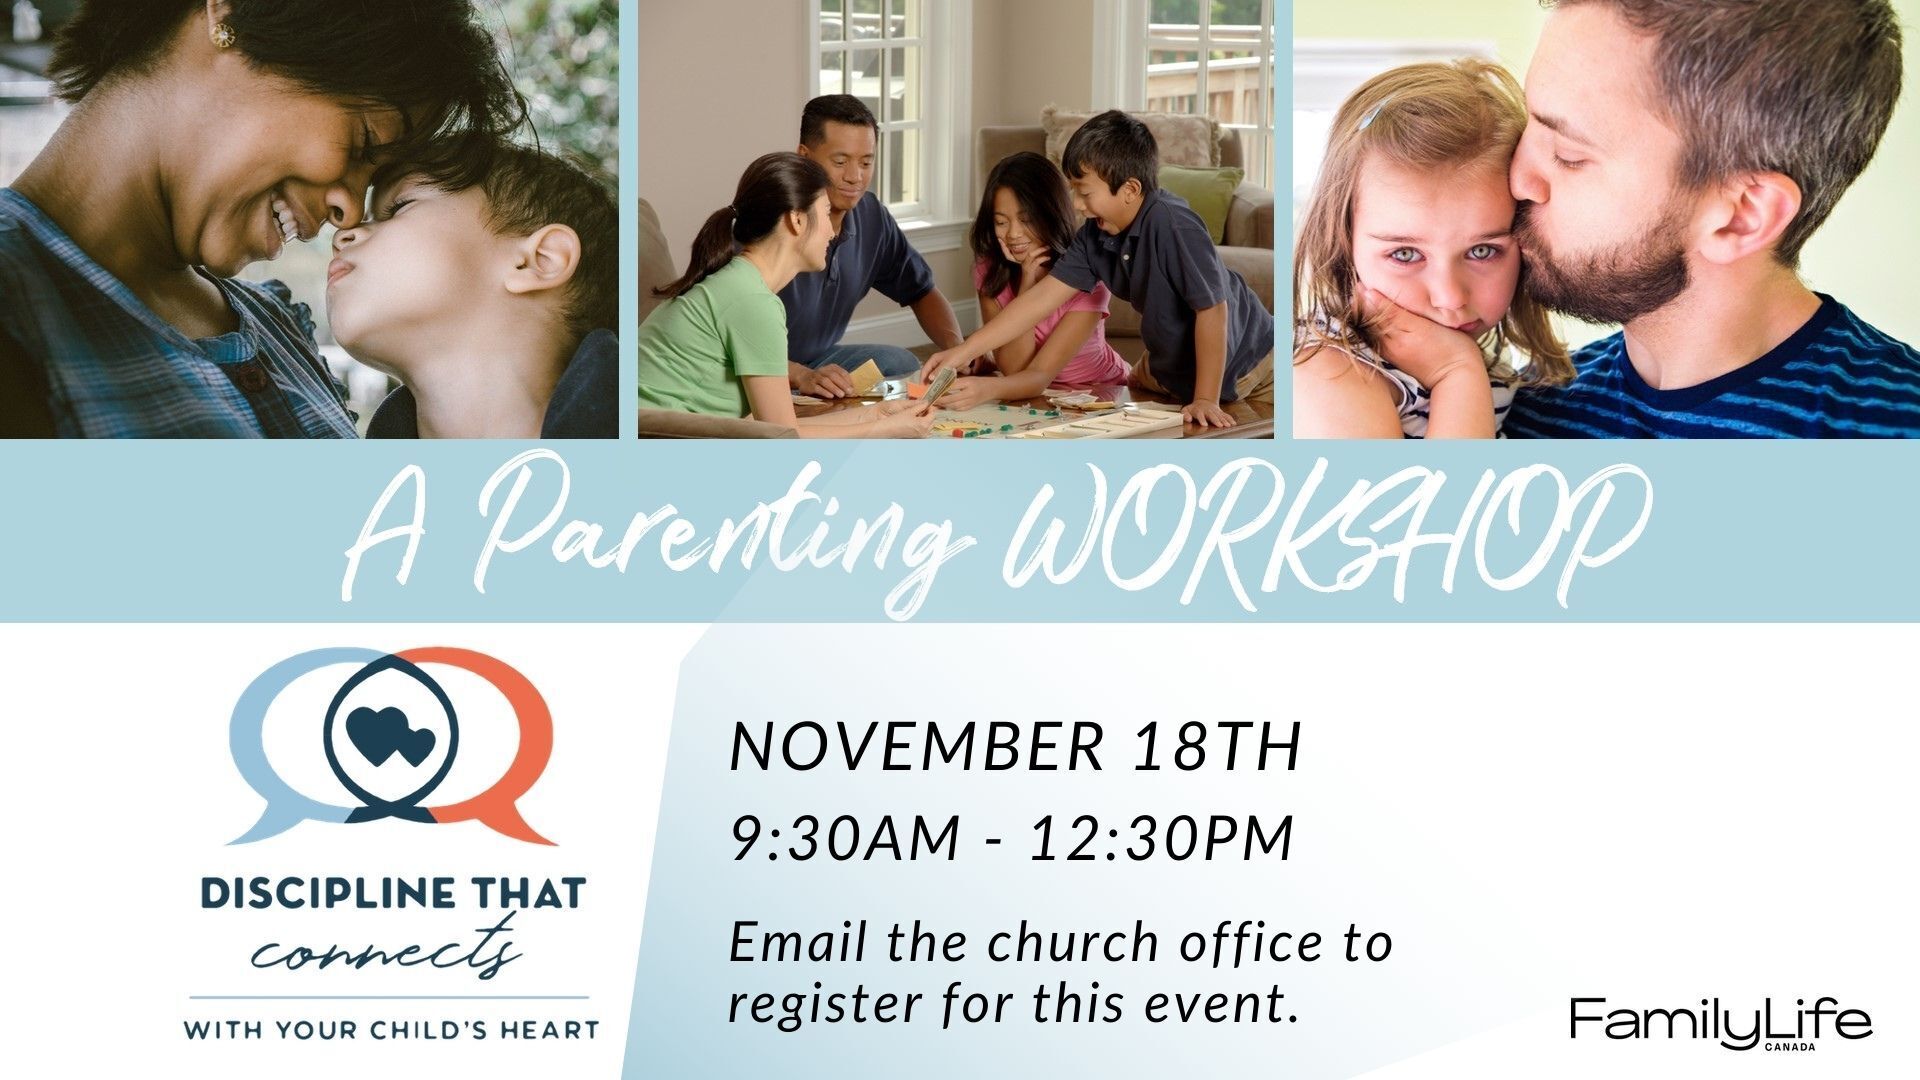 Parenting Workshop November 18